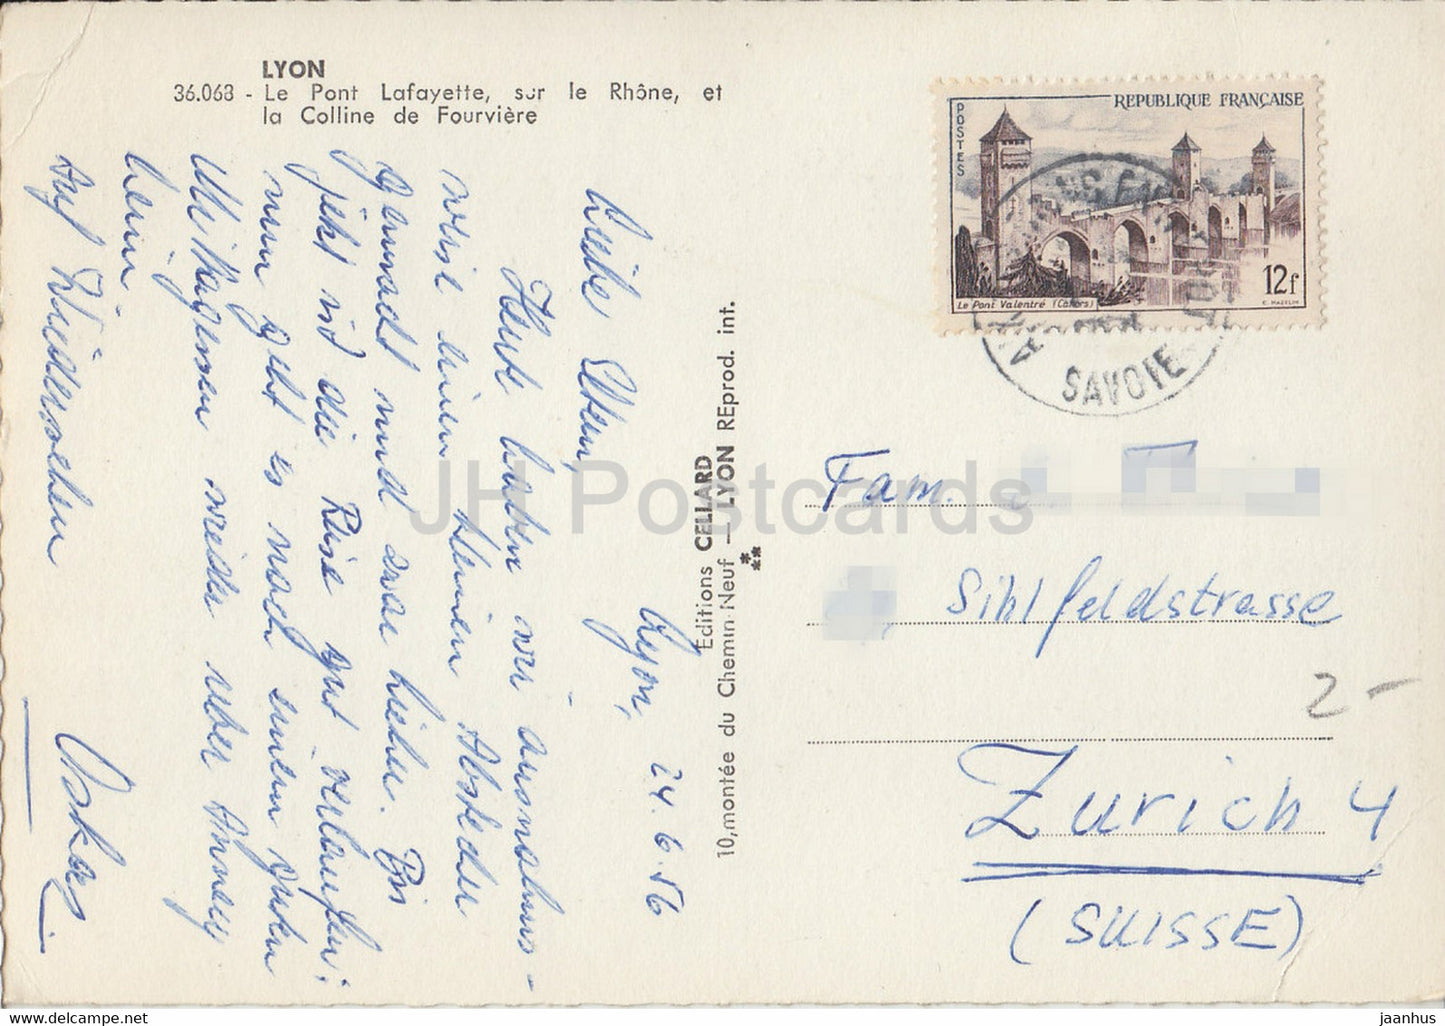 Lyon - Le Pont Lafayette sur le Rhone et la Colline de Fourviere - bridge - tram - old postcard - 1956 - France - used